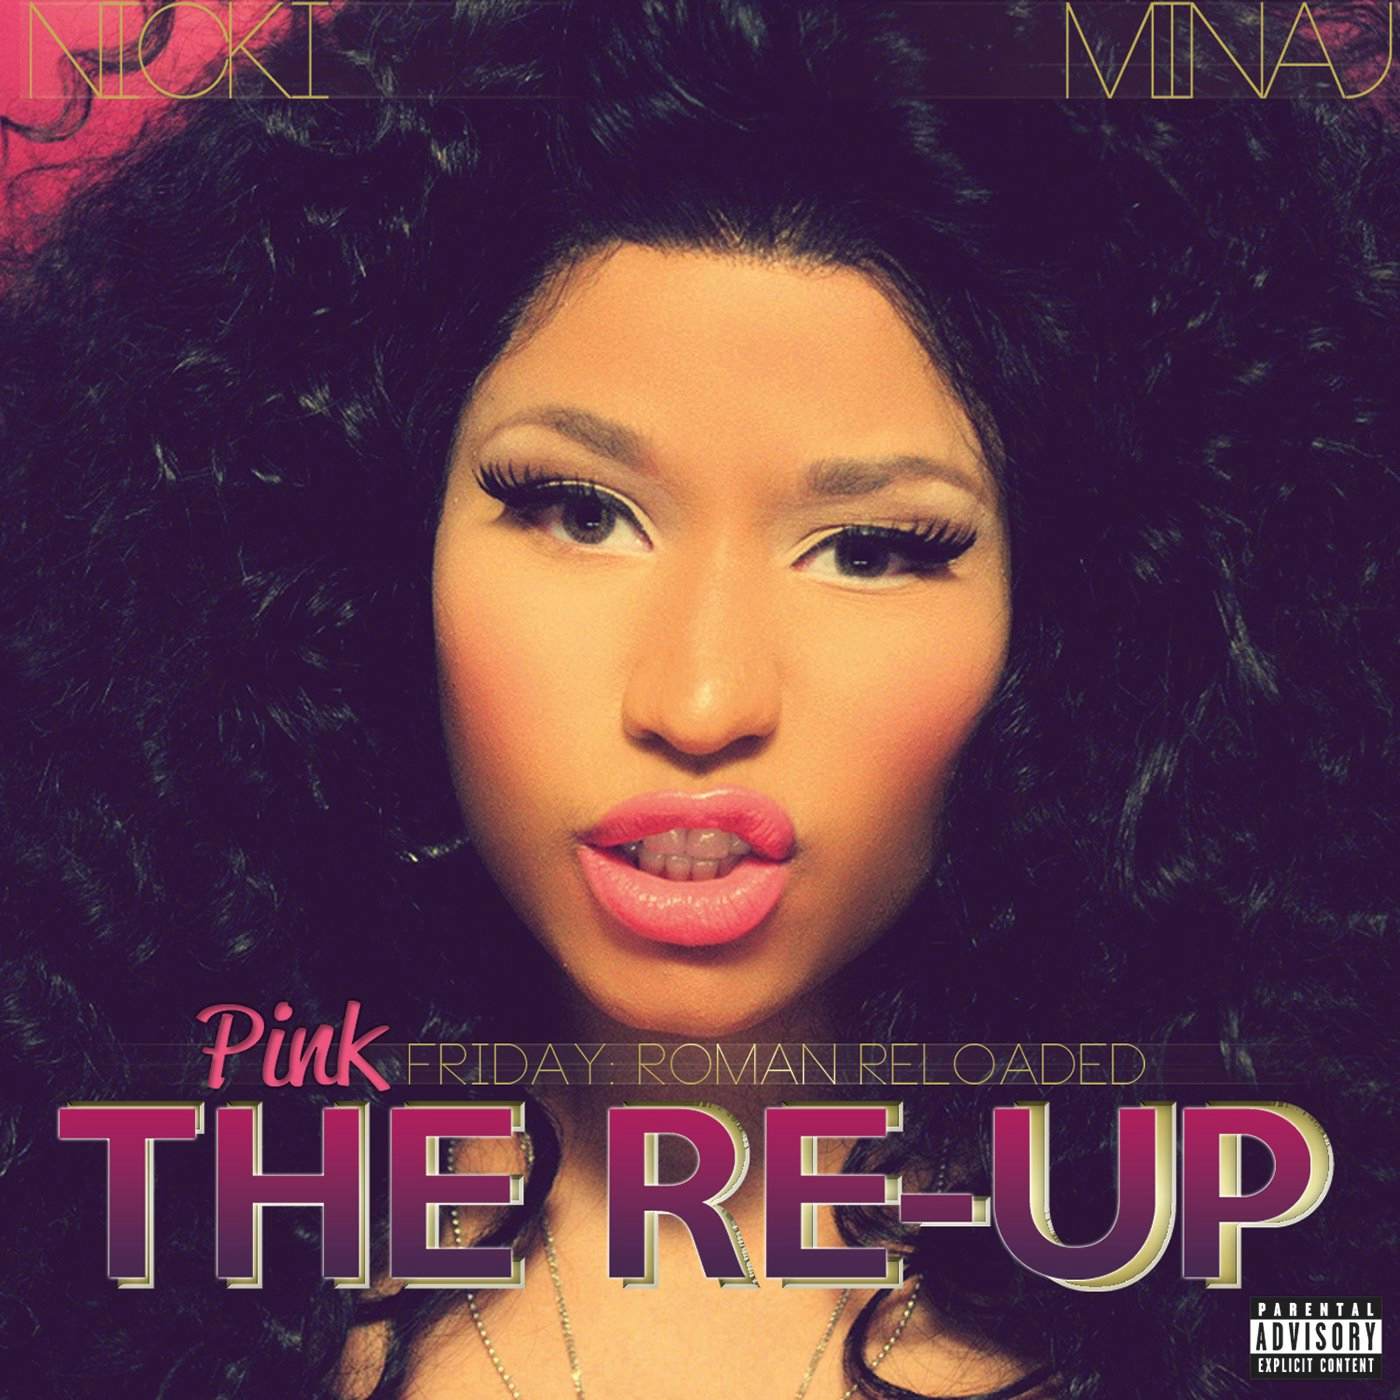 Nicki Minaj PINK FRIDAY: ROMAN RELOADED RE-UP CD